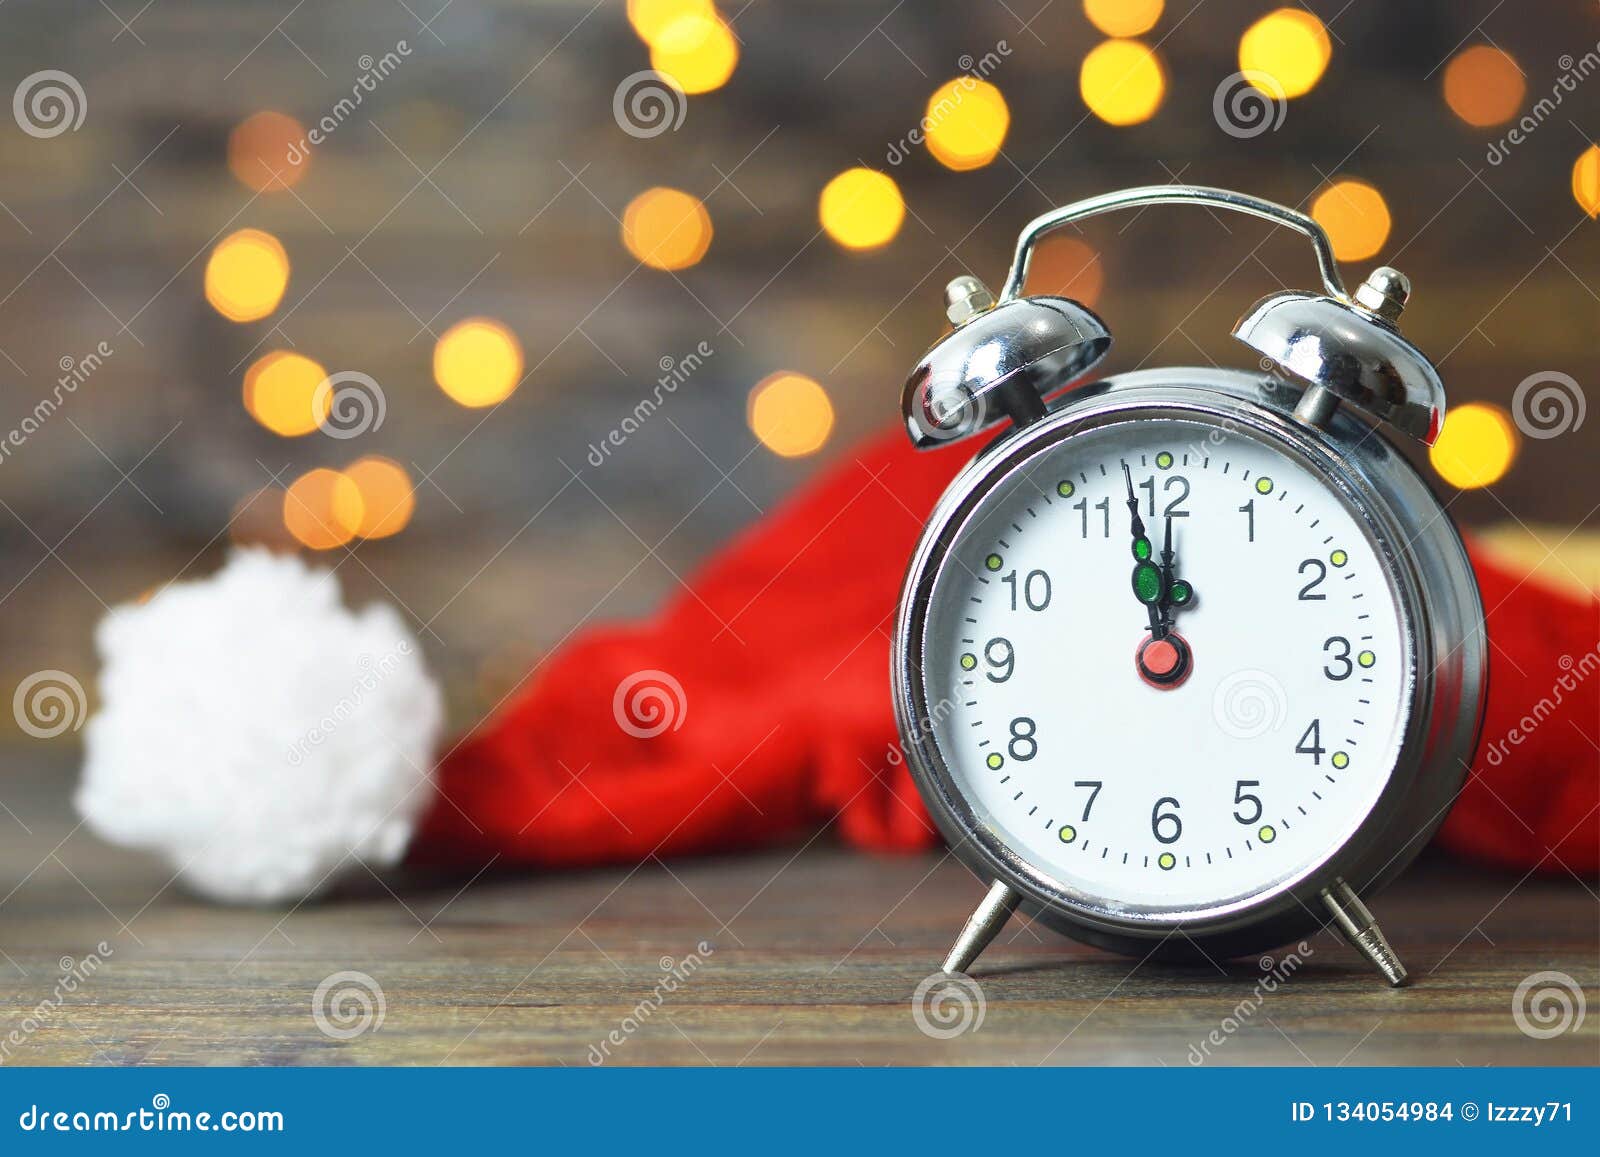 Midnight Clock. New Years Countdown Stock Photo - Image of year ...